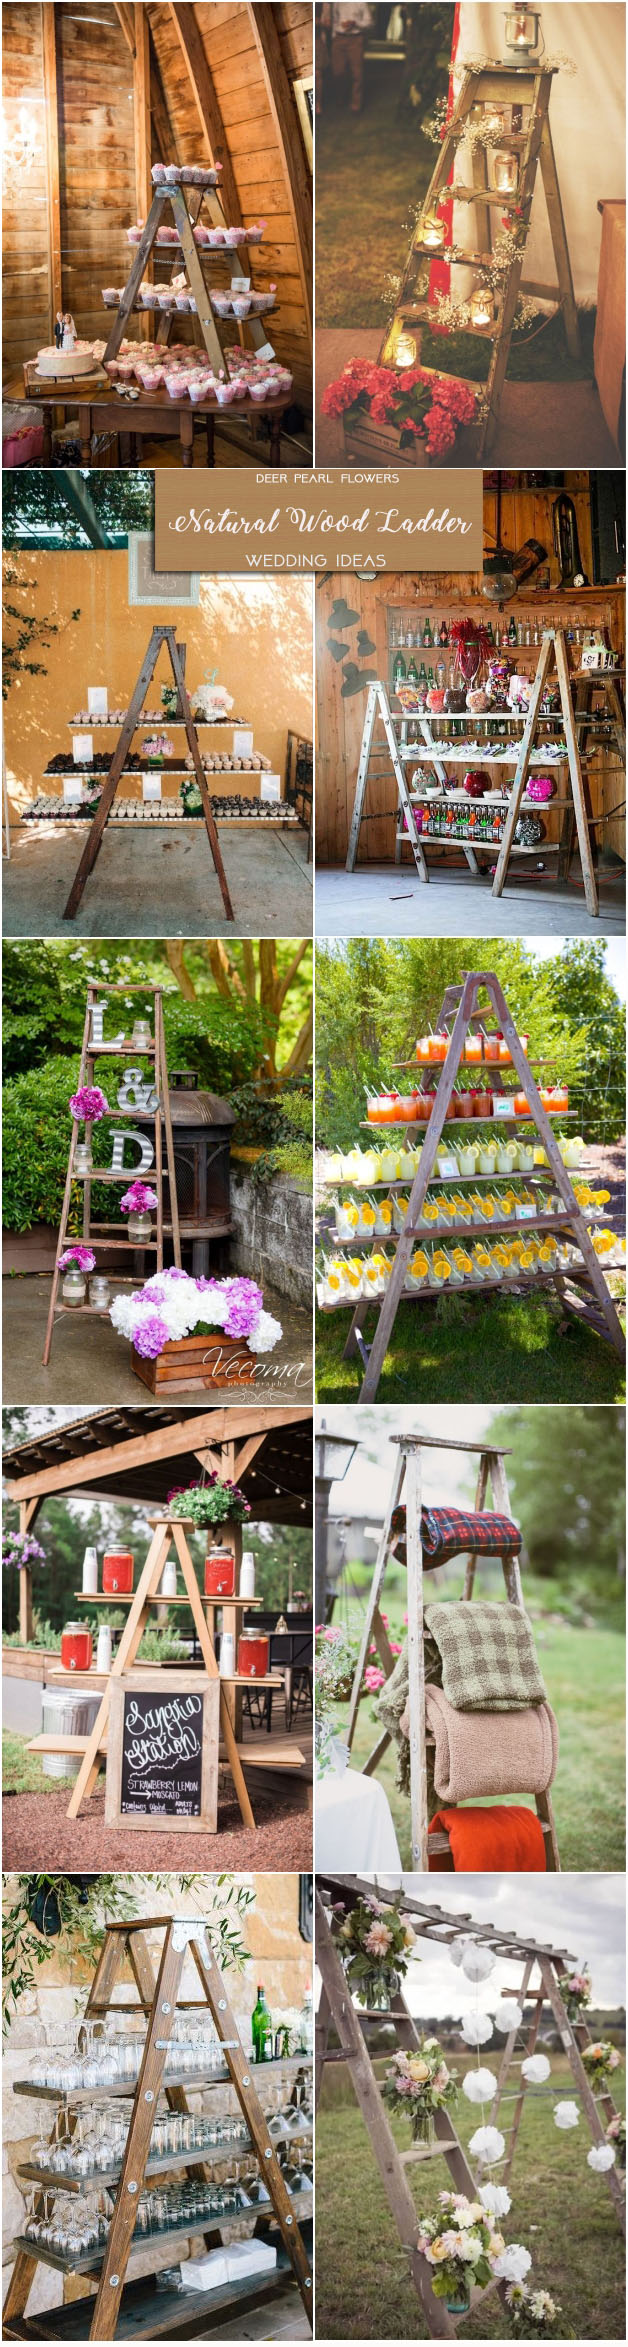 Rustic wedding ideas- natural wood ladder wedding decor ideas